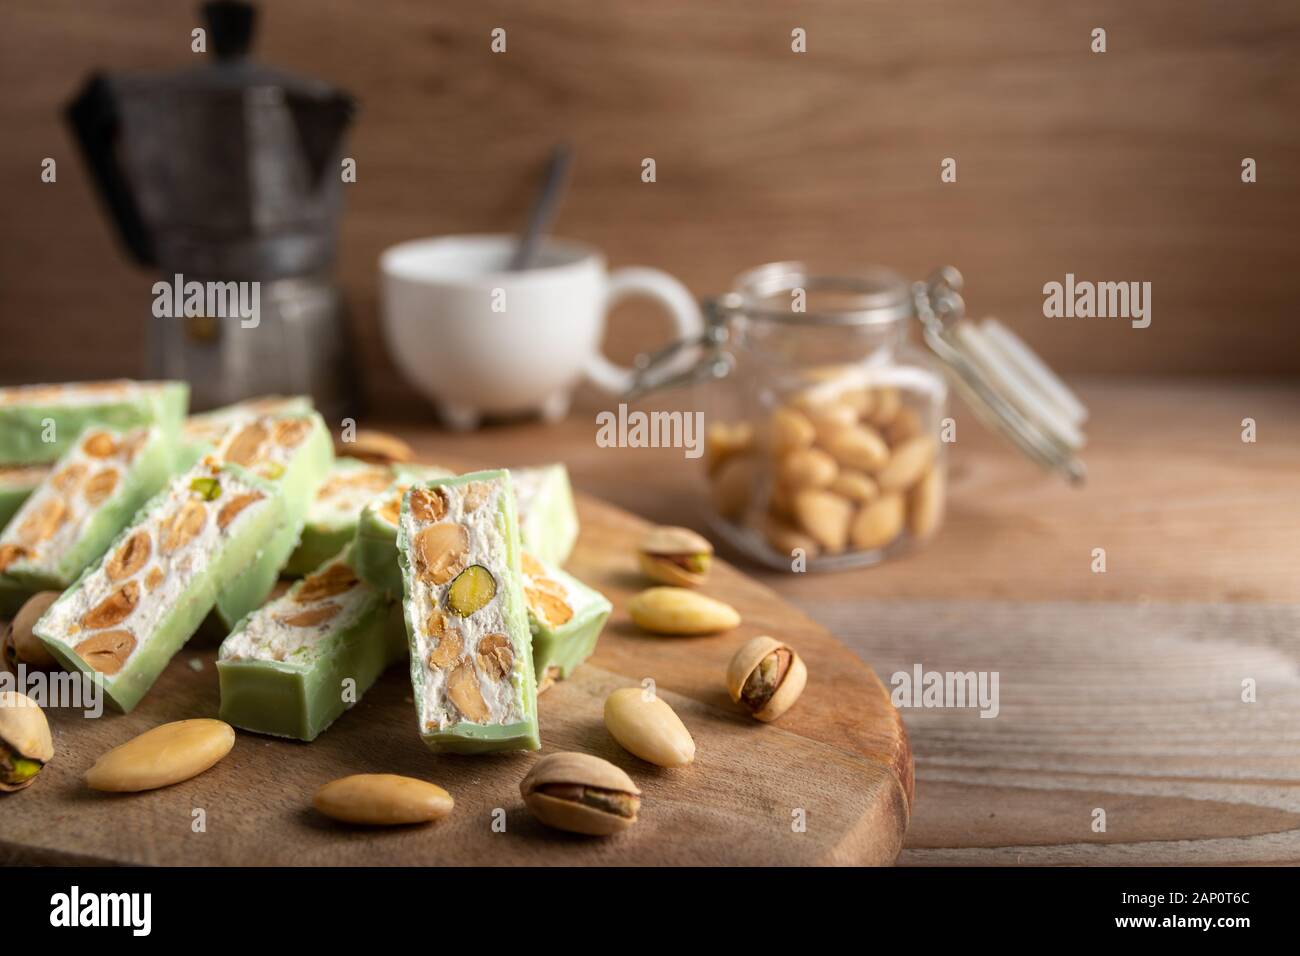 Nougat bio faites avec du miel, pistache, noisette, amande et noix sur une table en bois en arrière-plan. Banque D'Images